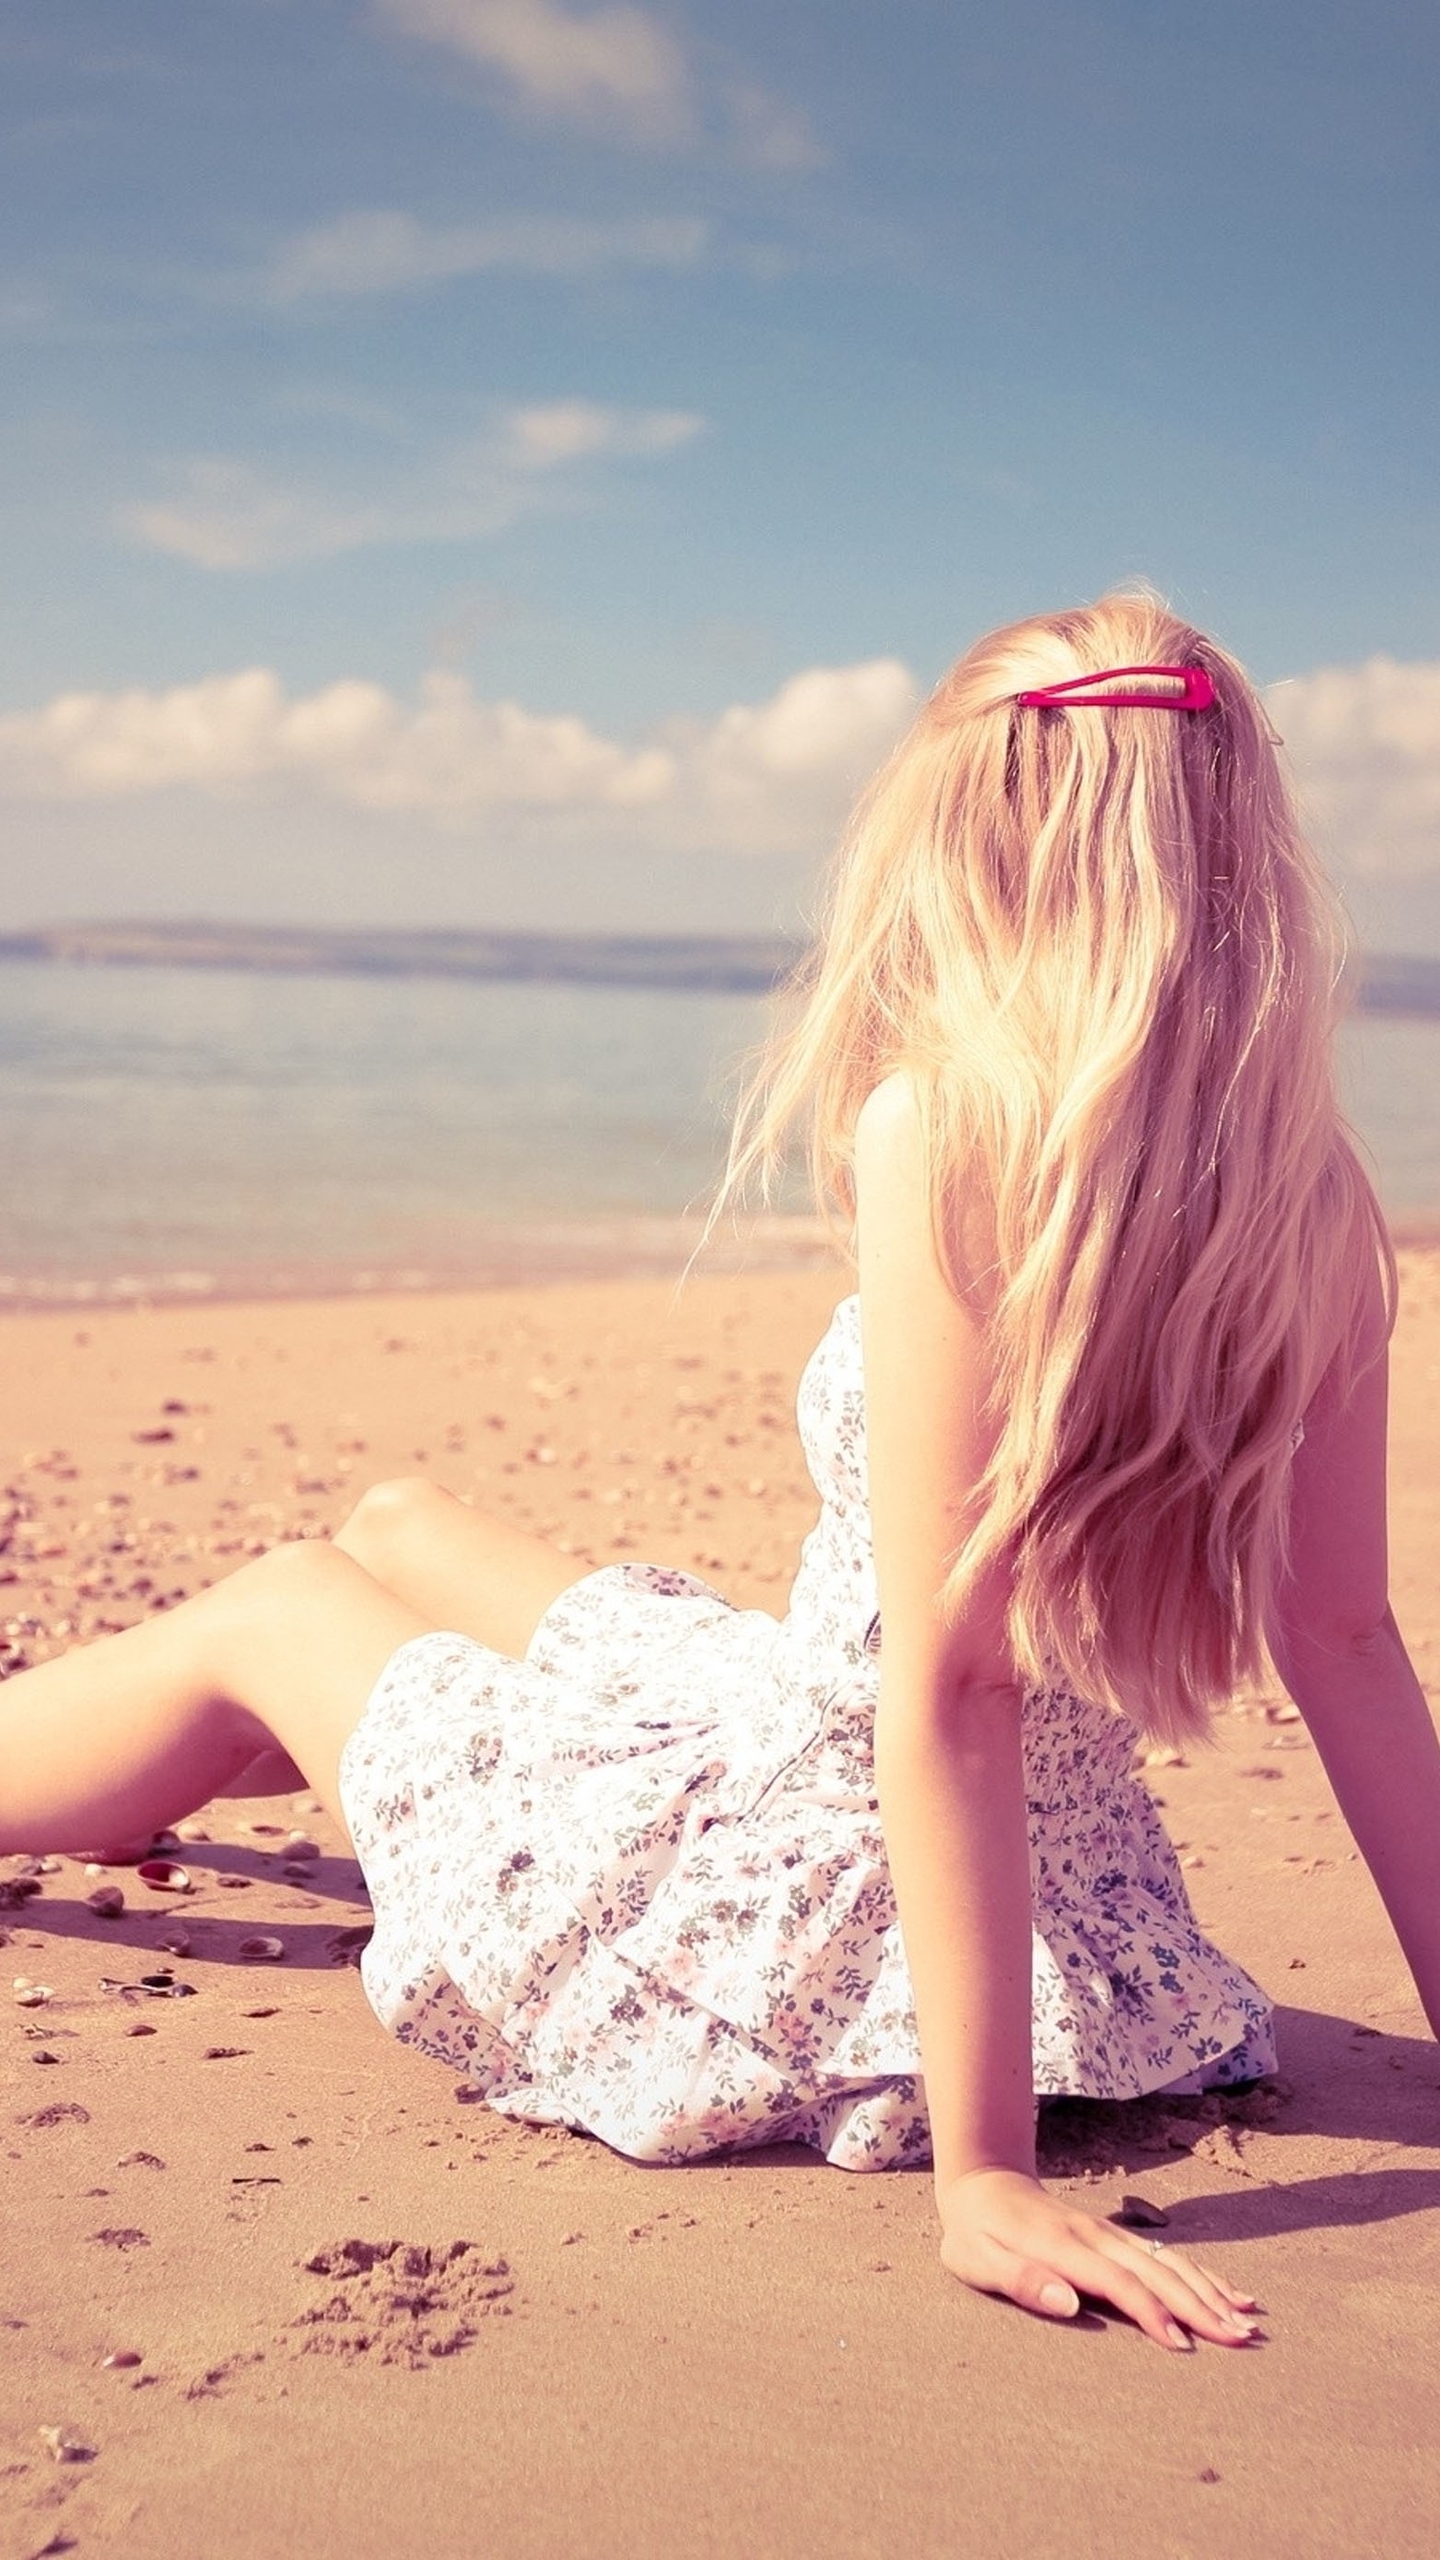 Картинка: Девушка, блондинка, волосы, заколка, платье, сидит, пляж, песок, море, горизонт, небо, облака